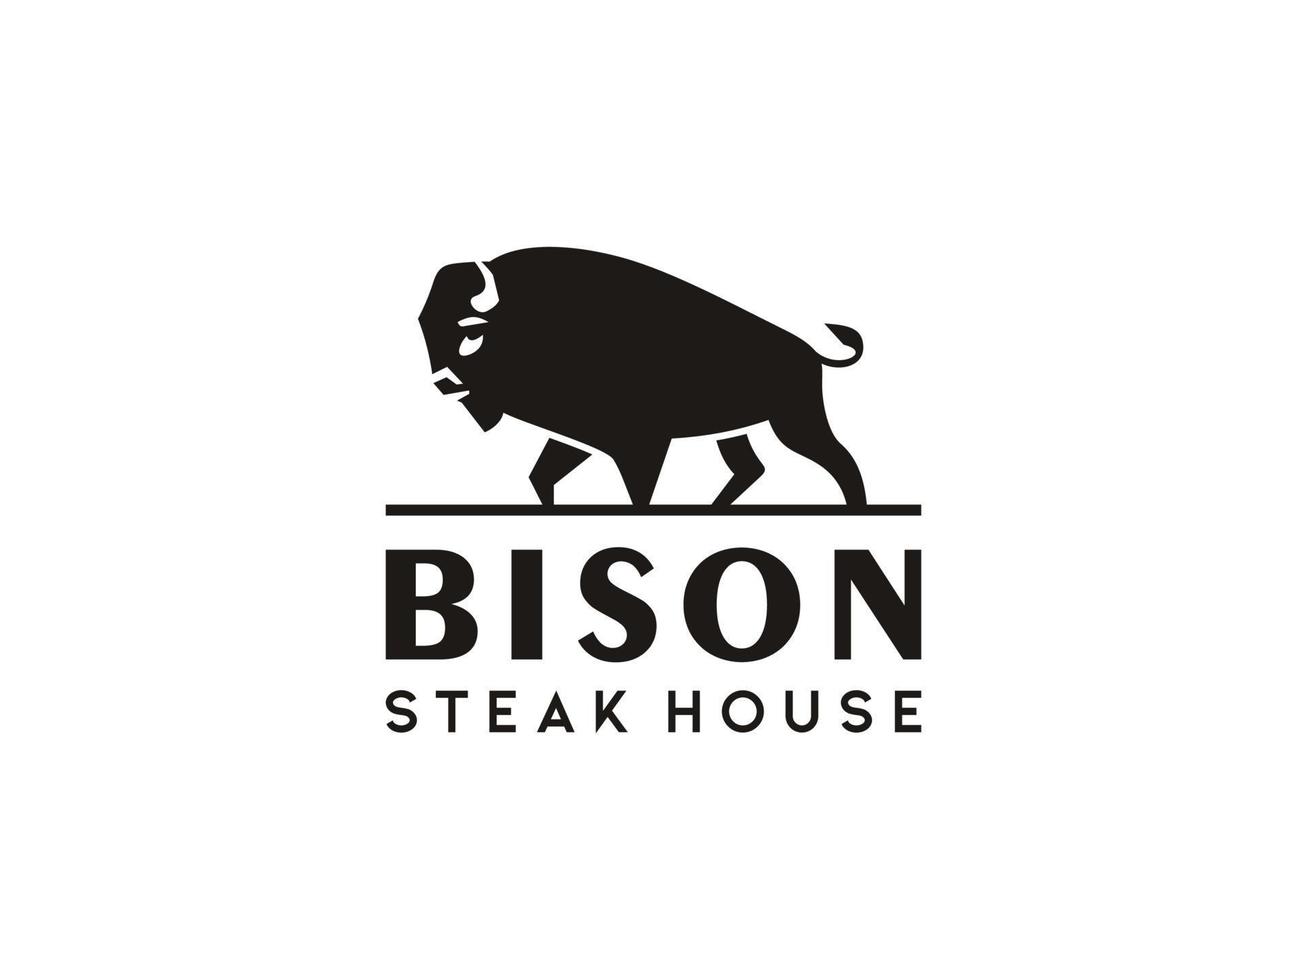 sagoma di bisonte con tipografia vintage per il design del logo della steak house. utilizzabile per loghi aziendali e di branding. elemento del modello di progettazione logo vettoriale piatto.